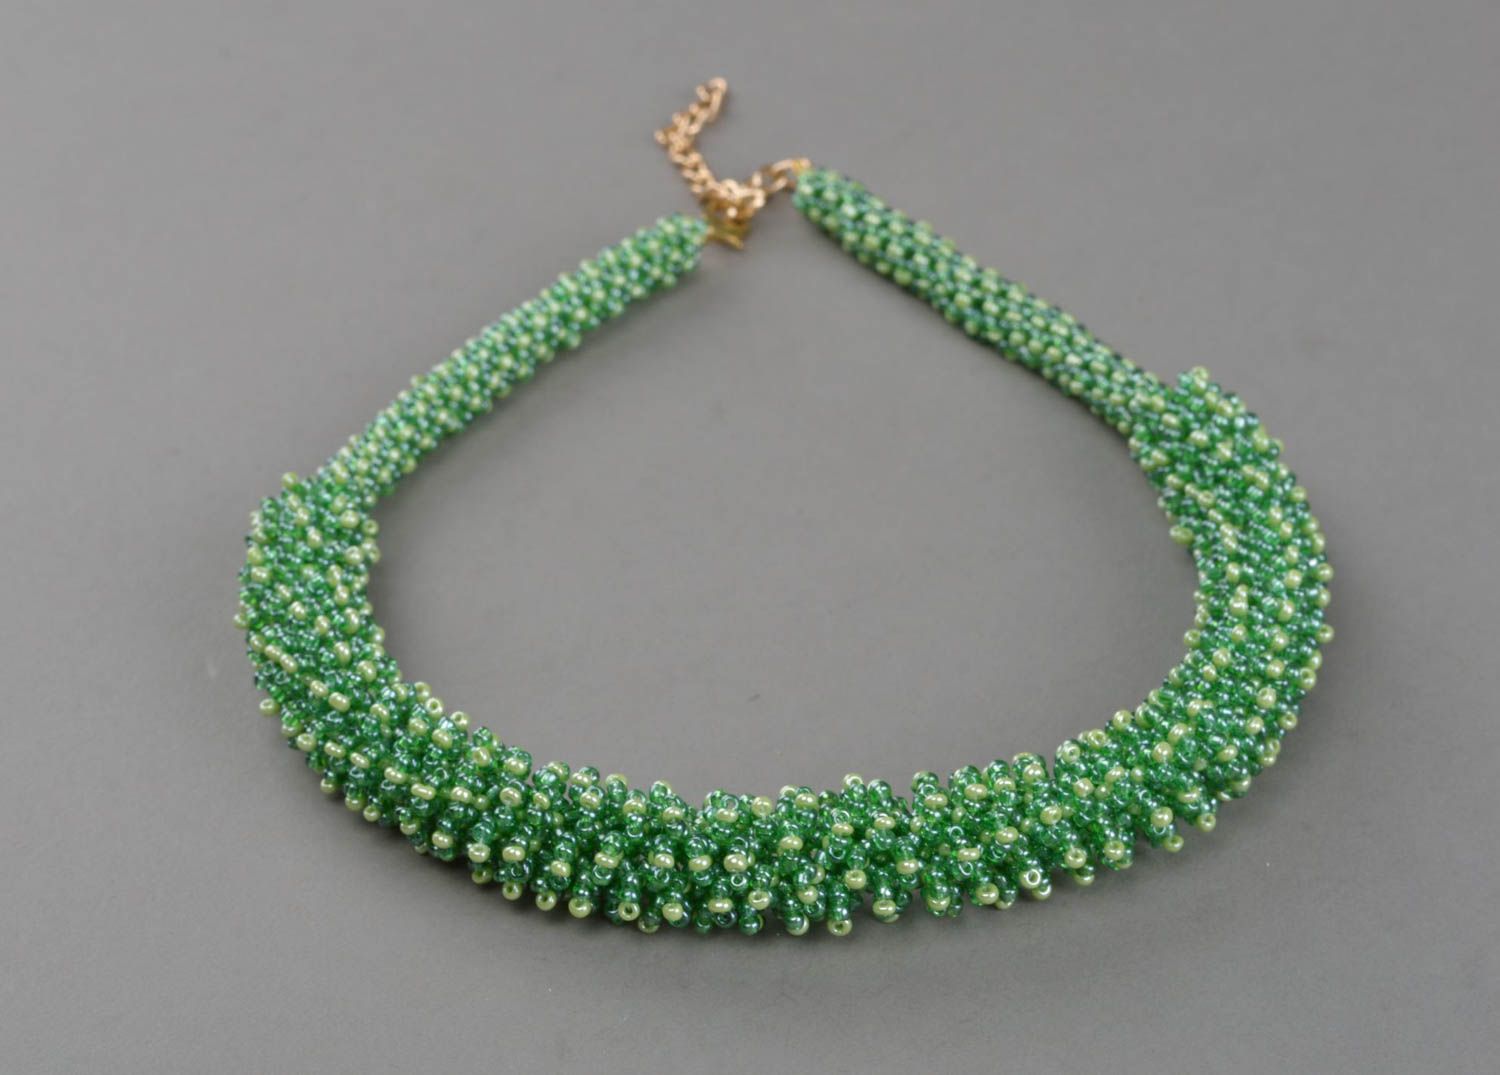 Ожерелье из бисера ручной работы авторское красивое в зеленых тонах стильное фото 2